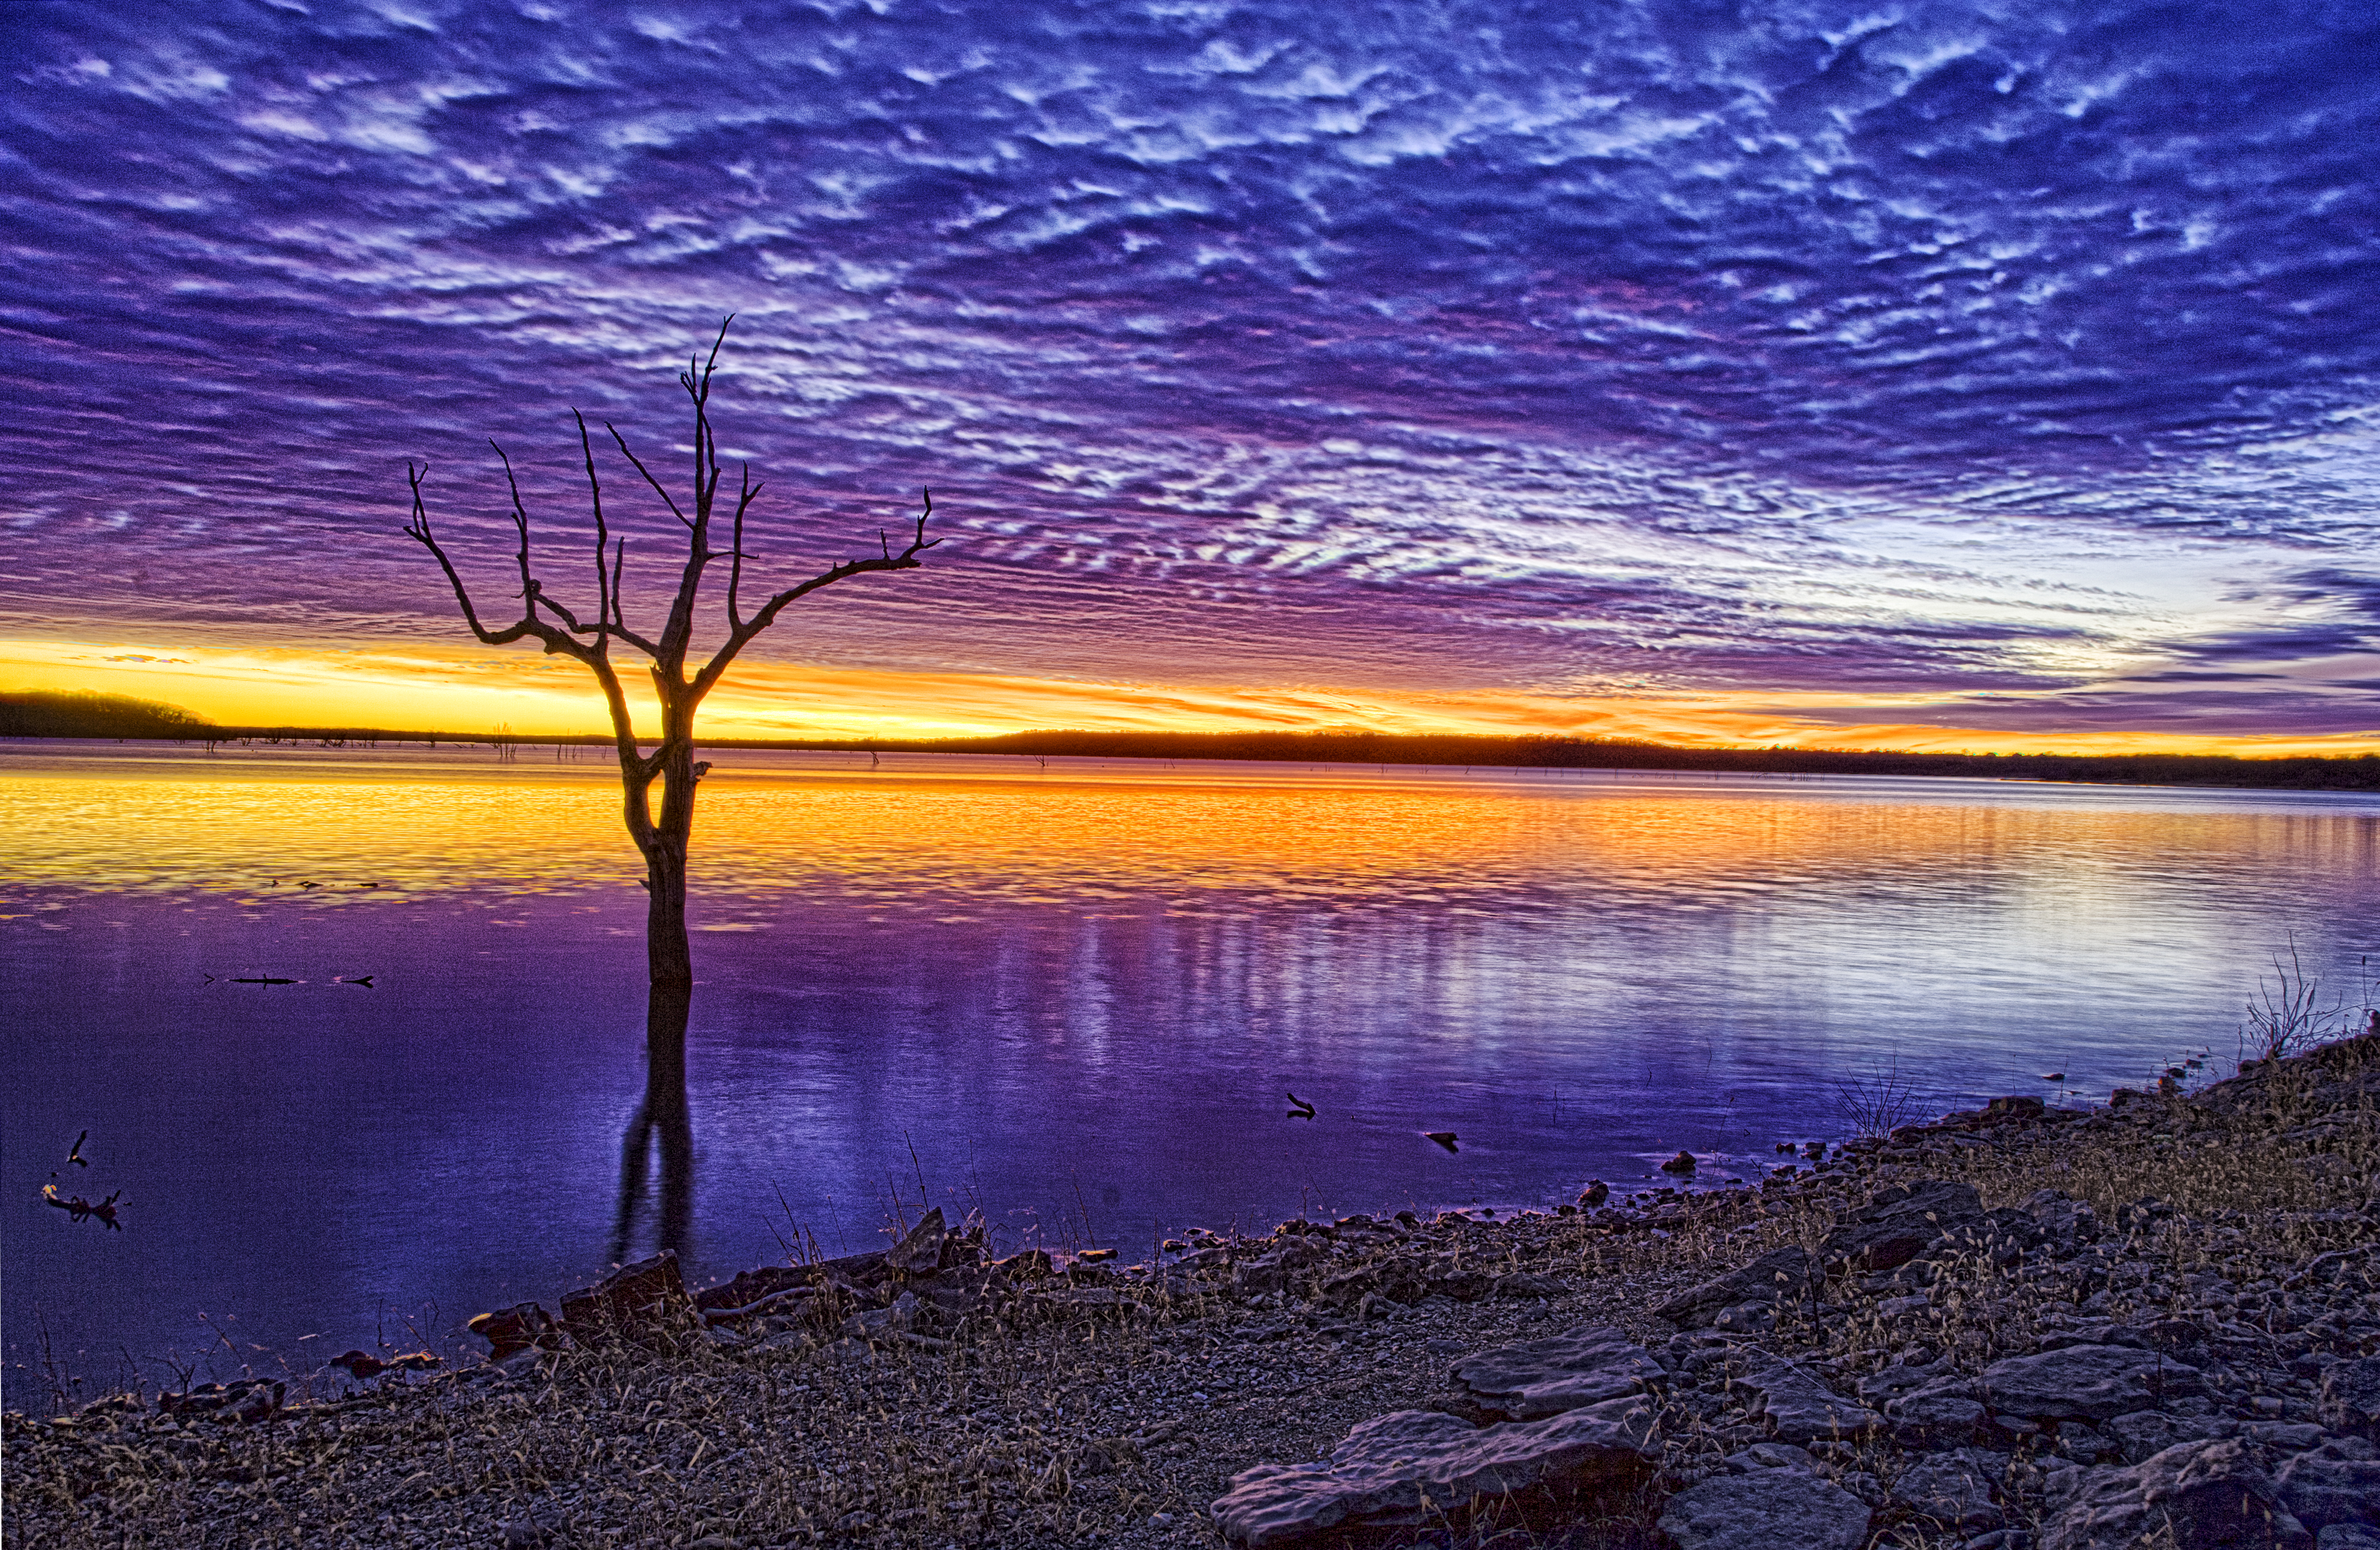 無料写真素材 自然風景 河川 湖 樹木 朝焼け 夕焼け 風景アメリカ合衆国画像素材なら 無料 フリー写真素材のフリーフォト